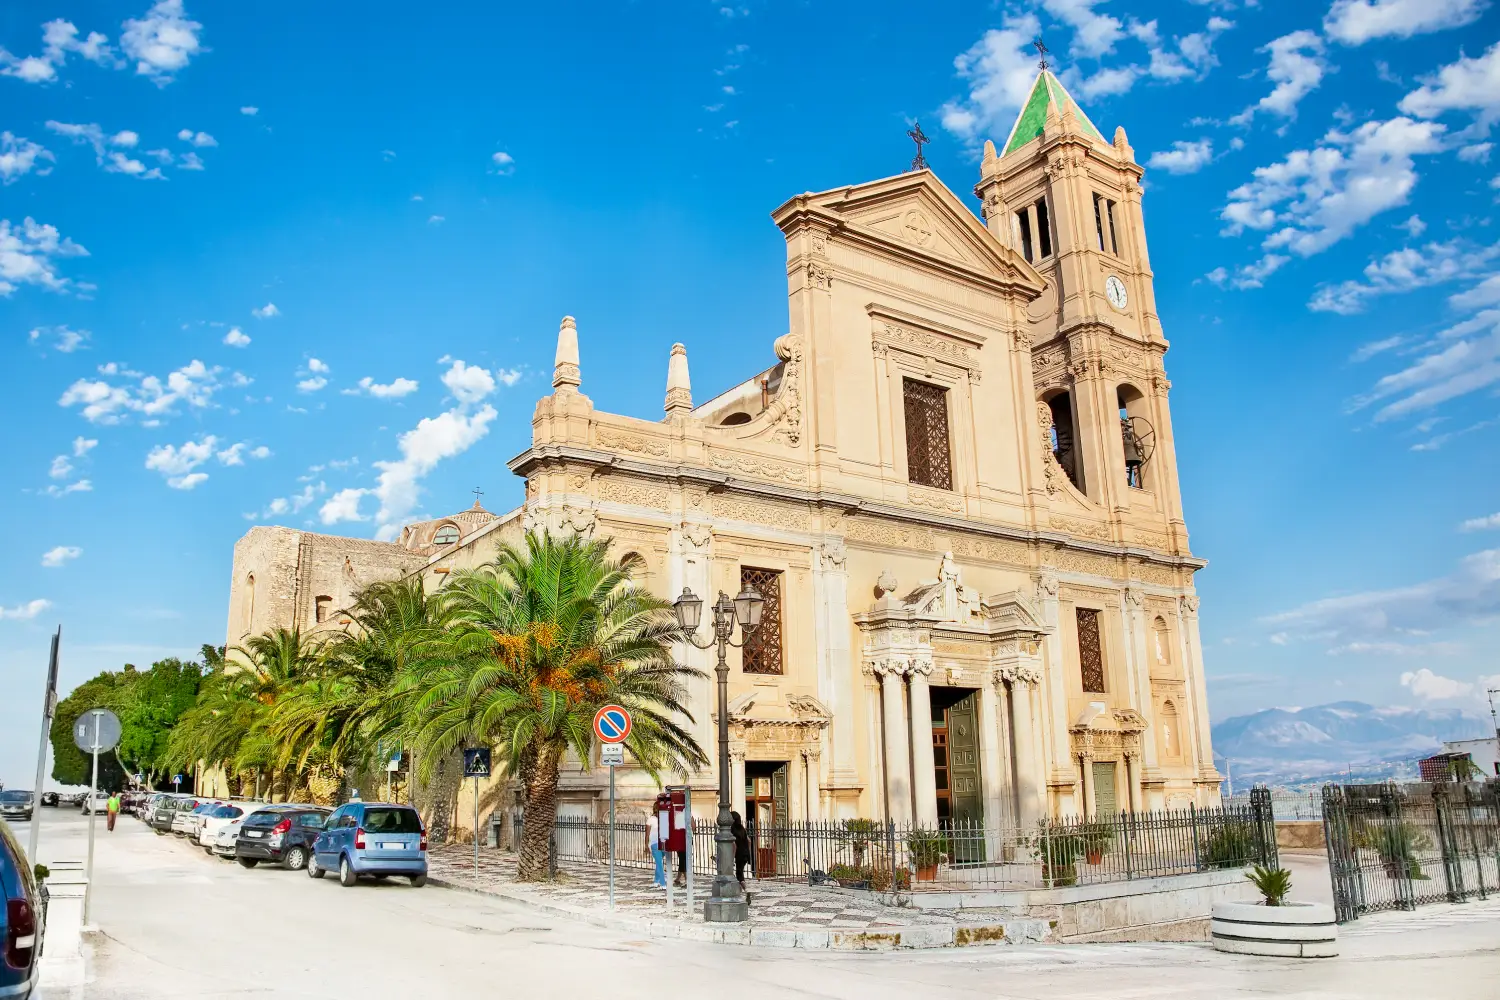 Parrocchia San Nicola Di Bari Church In Termini Imerese, Sicily